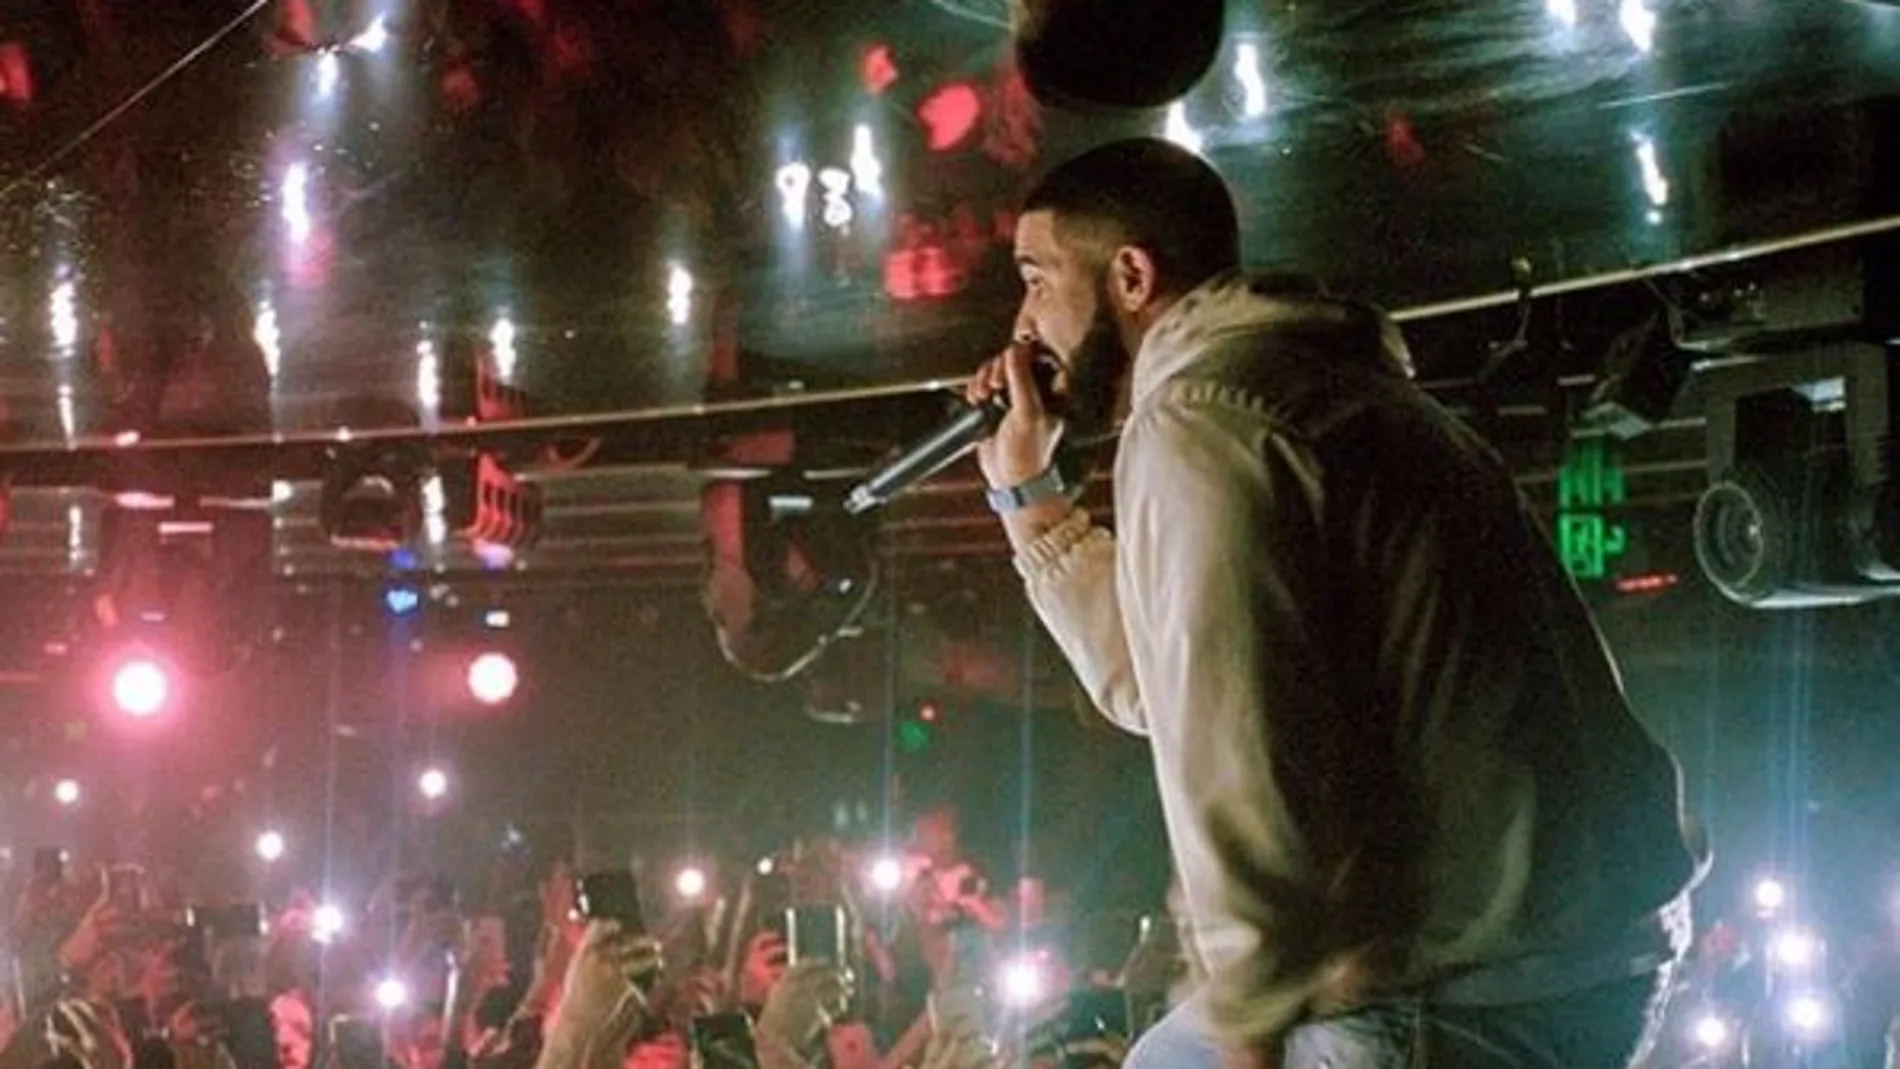 Imagen del Drake durante uno de sus conciertos